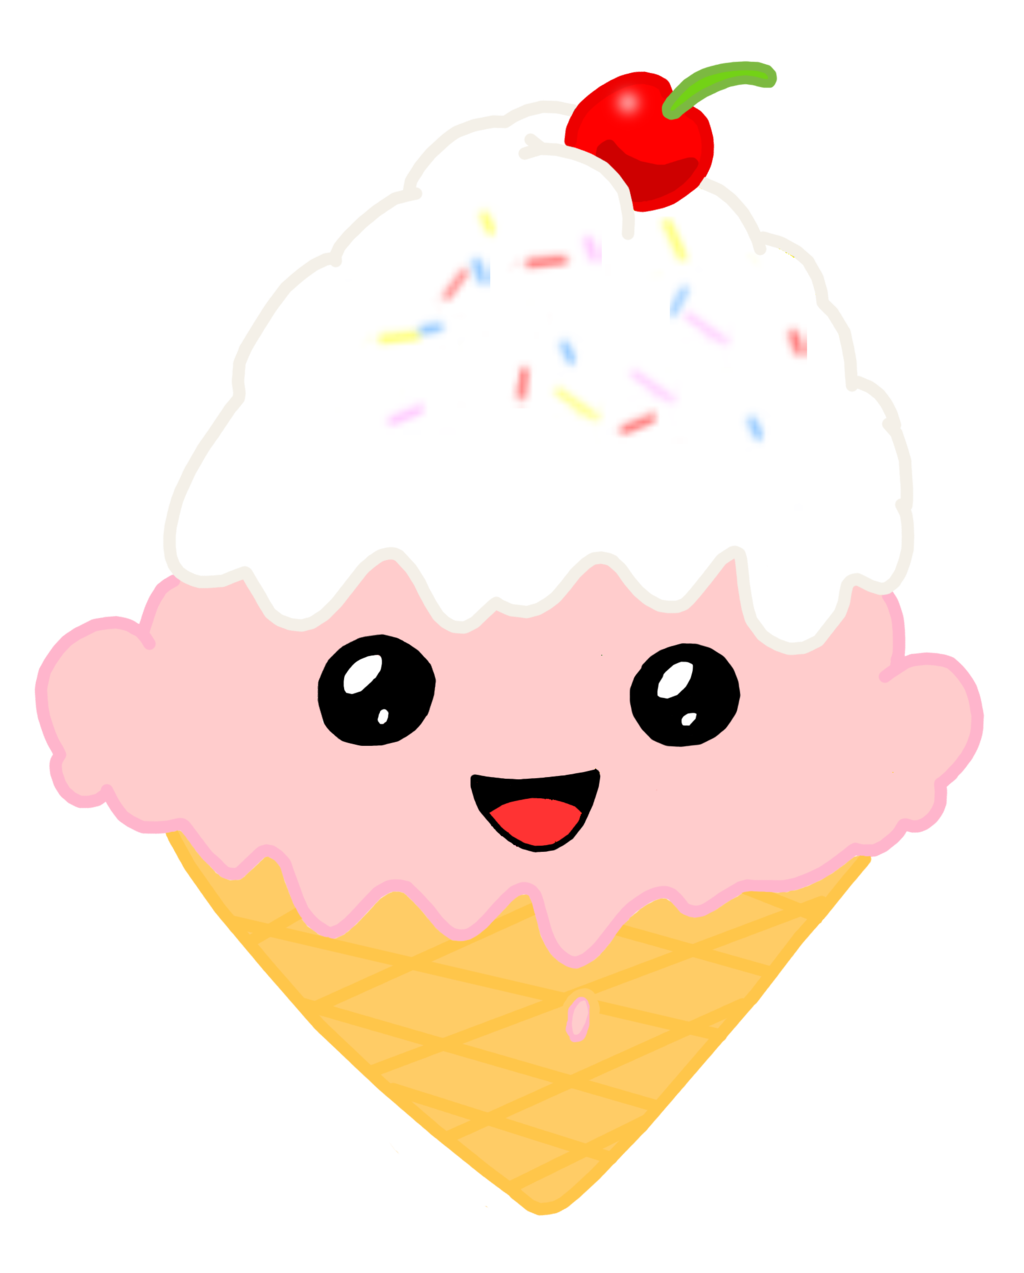 icecream clipart cute